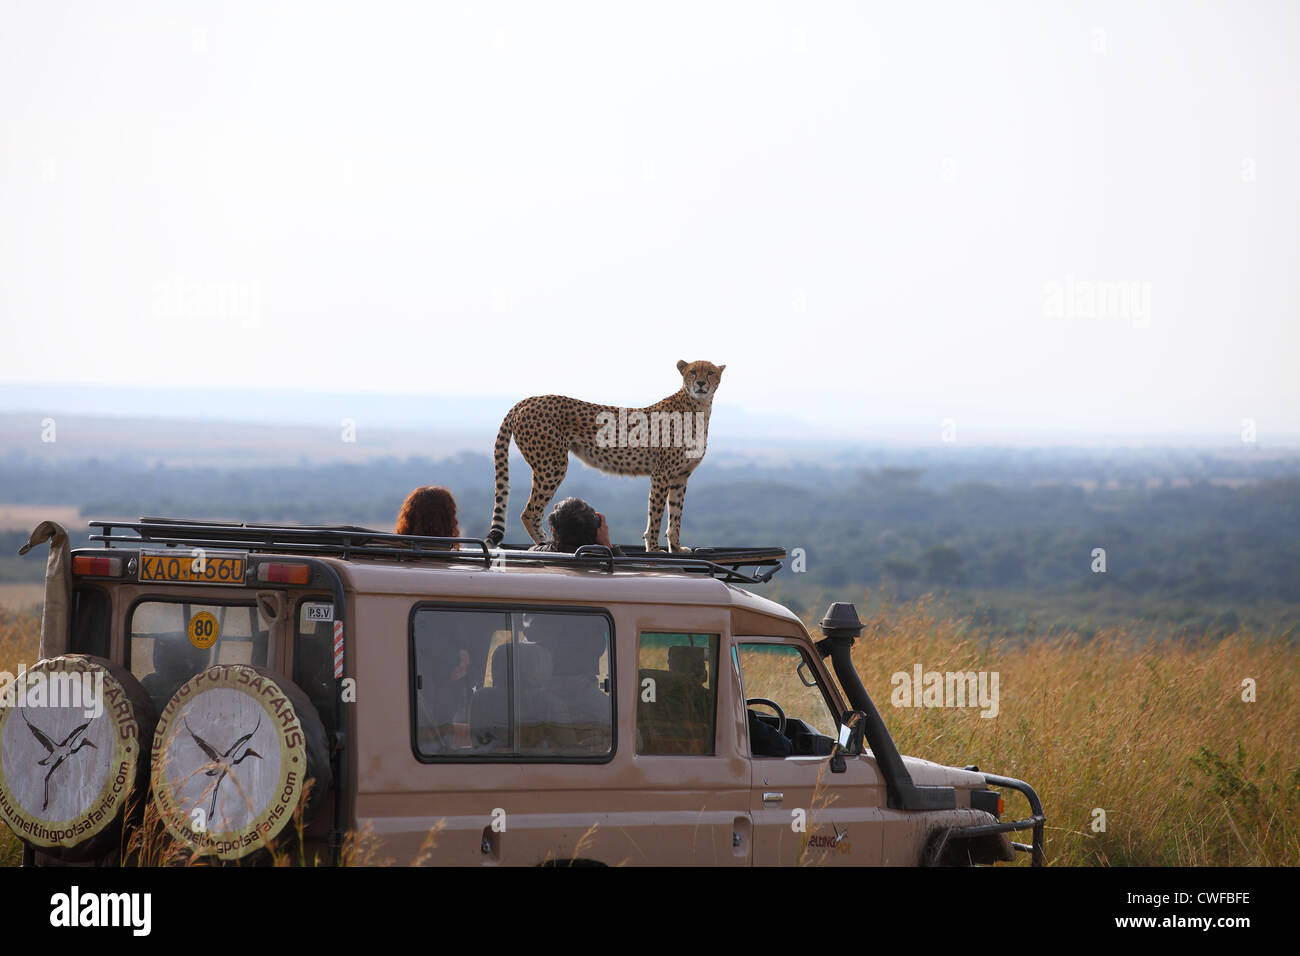 Guepardo (Acinonyx jubatus) en la parte superior del vehículo de turismo en el Parque Nacional de Masai Mara, Kenya Foto de stock